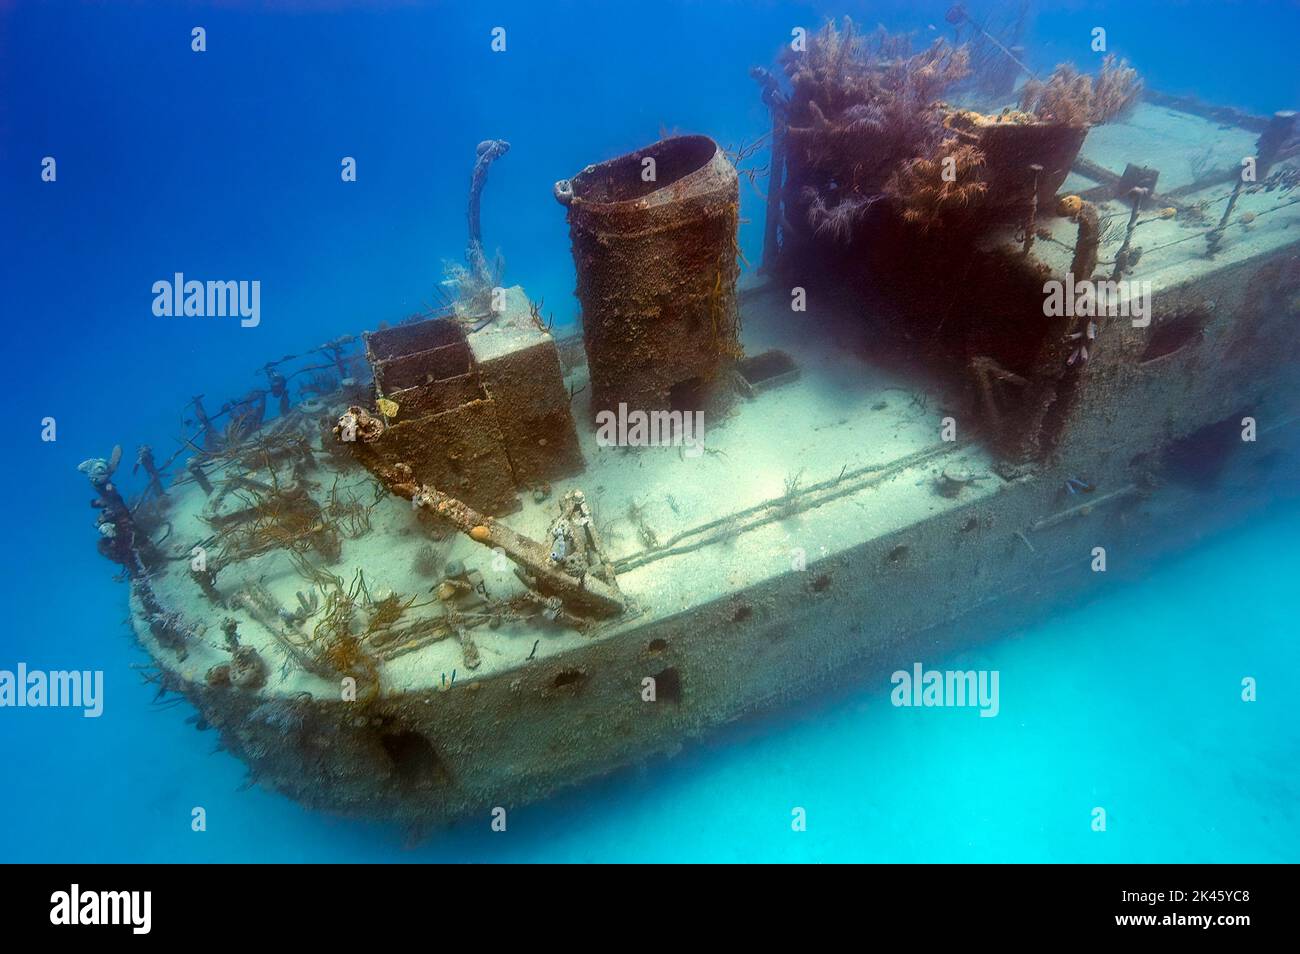 Il relitto del Principe Alberto a Roatan fu un'imbarcazione passeggeri per anni fino a quando fu abbandonata e trasformata in un'attrazione per immersioni subacquee. Foto Stock